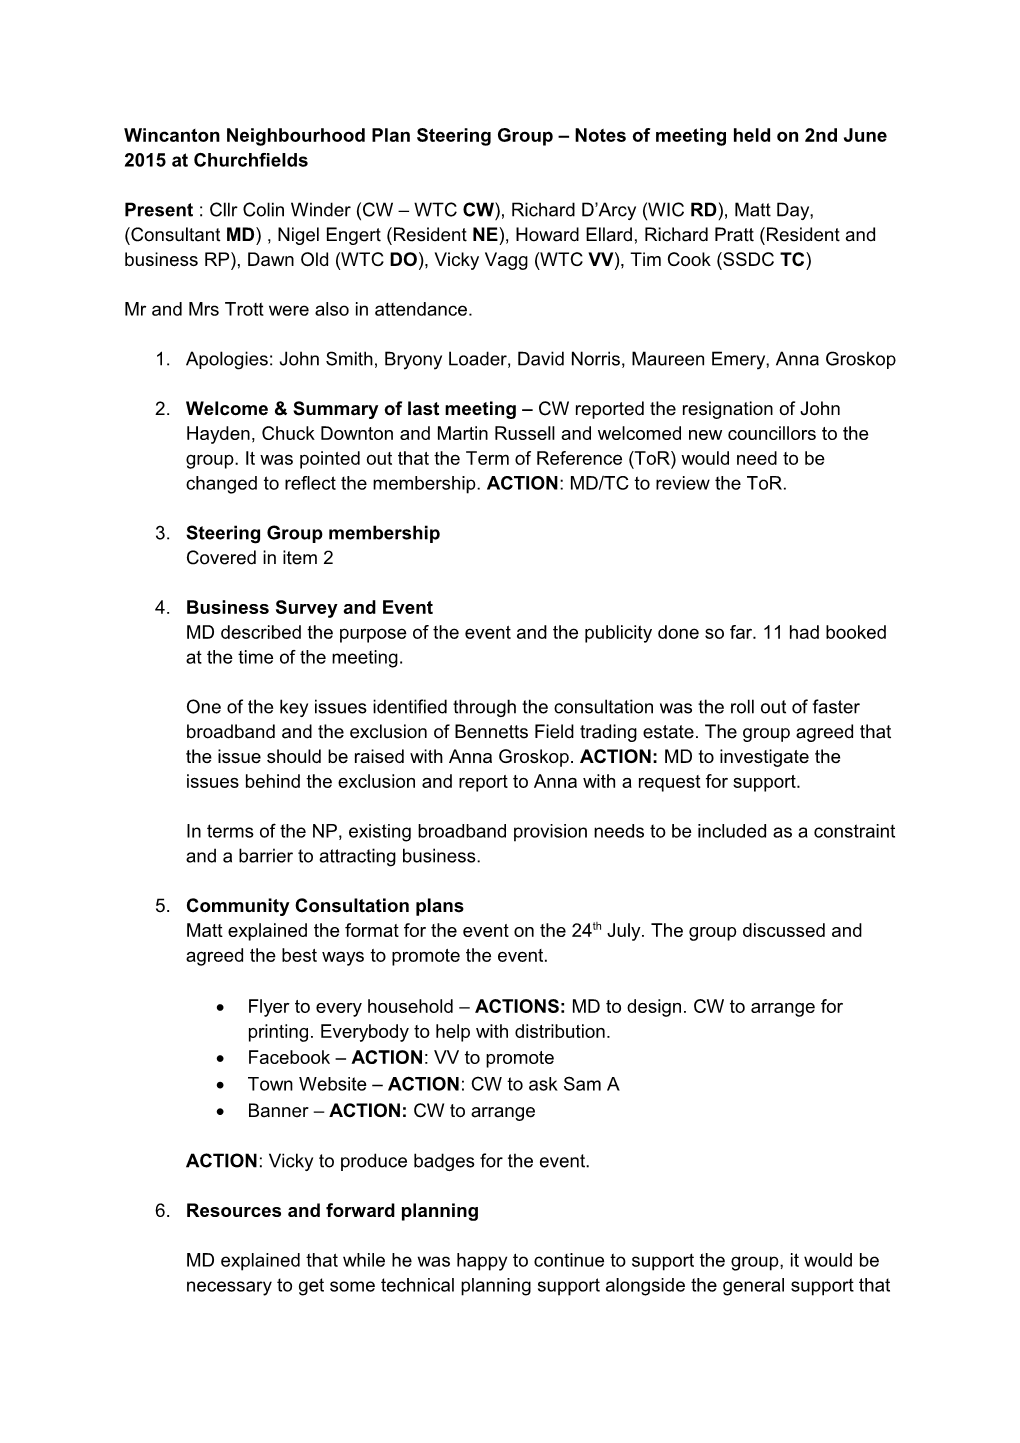 Wincanton Neighbourhood Plan Steering Group Notes of Meeting Held on 2Nd June 2015 At